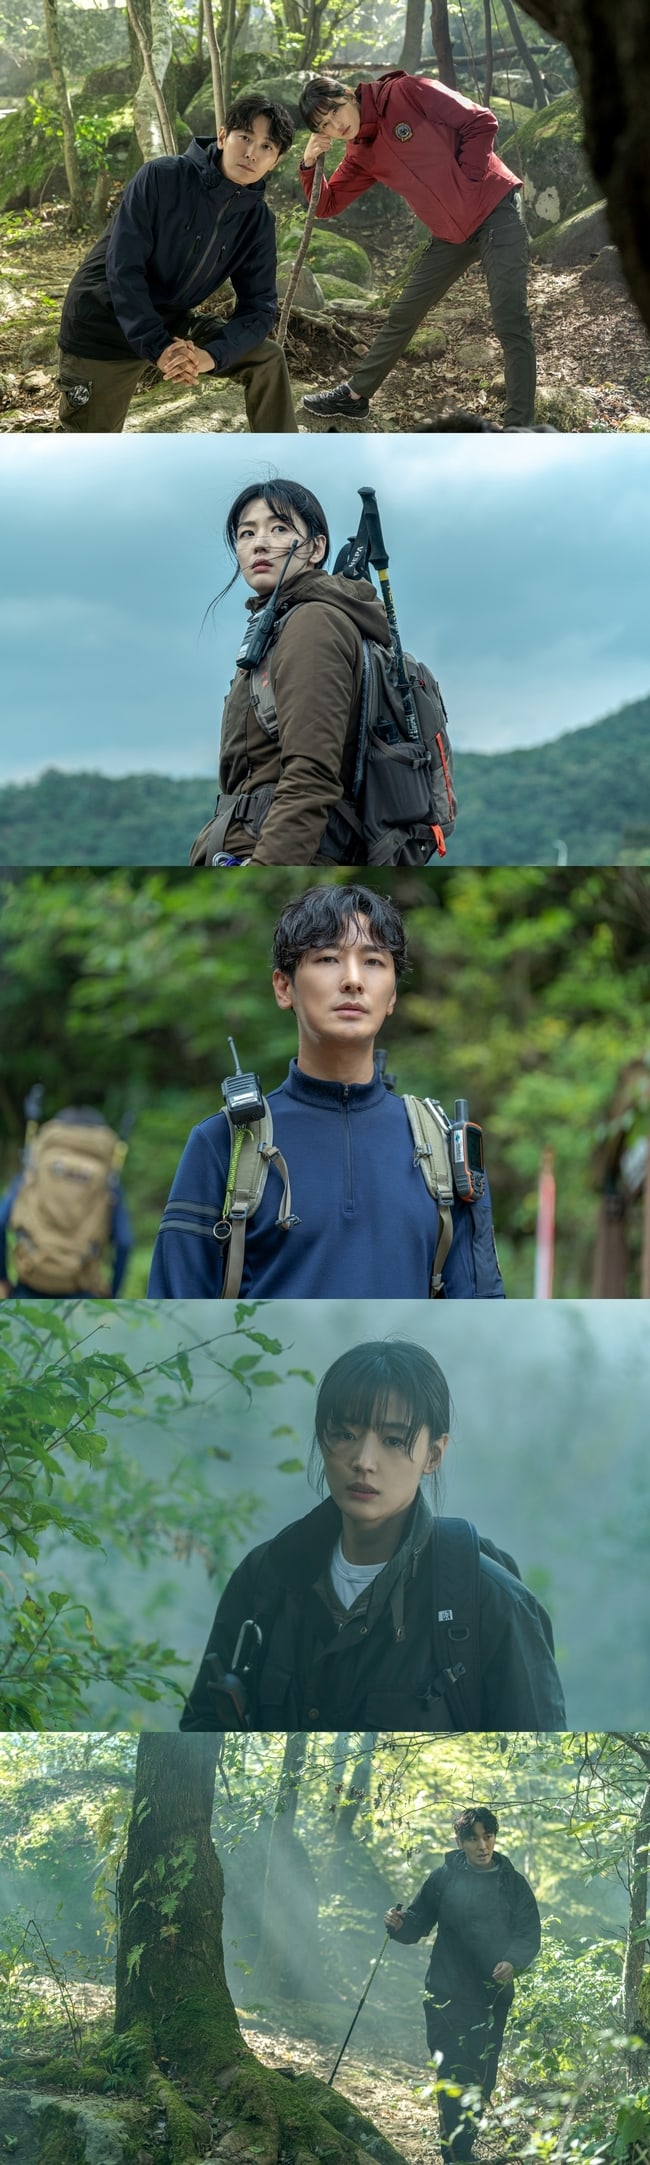 Jeon Ji Hyun - Joo Ji Hoon vào rừng sâu mà nhàn nhã như chụp tạp chí ở bom tấn Jiri Mountain? - Ảnh 1.